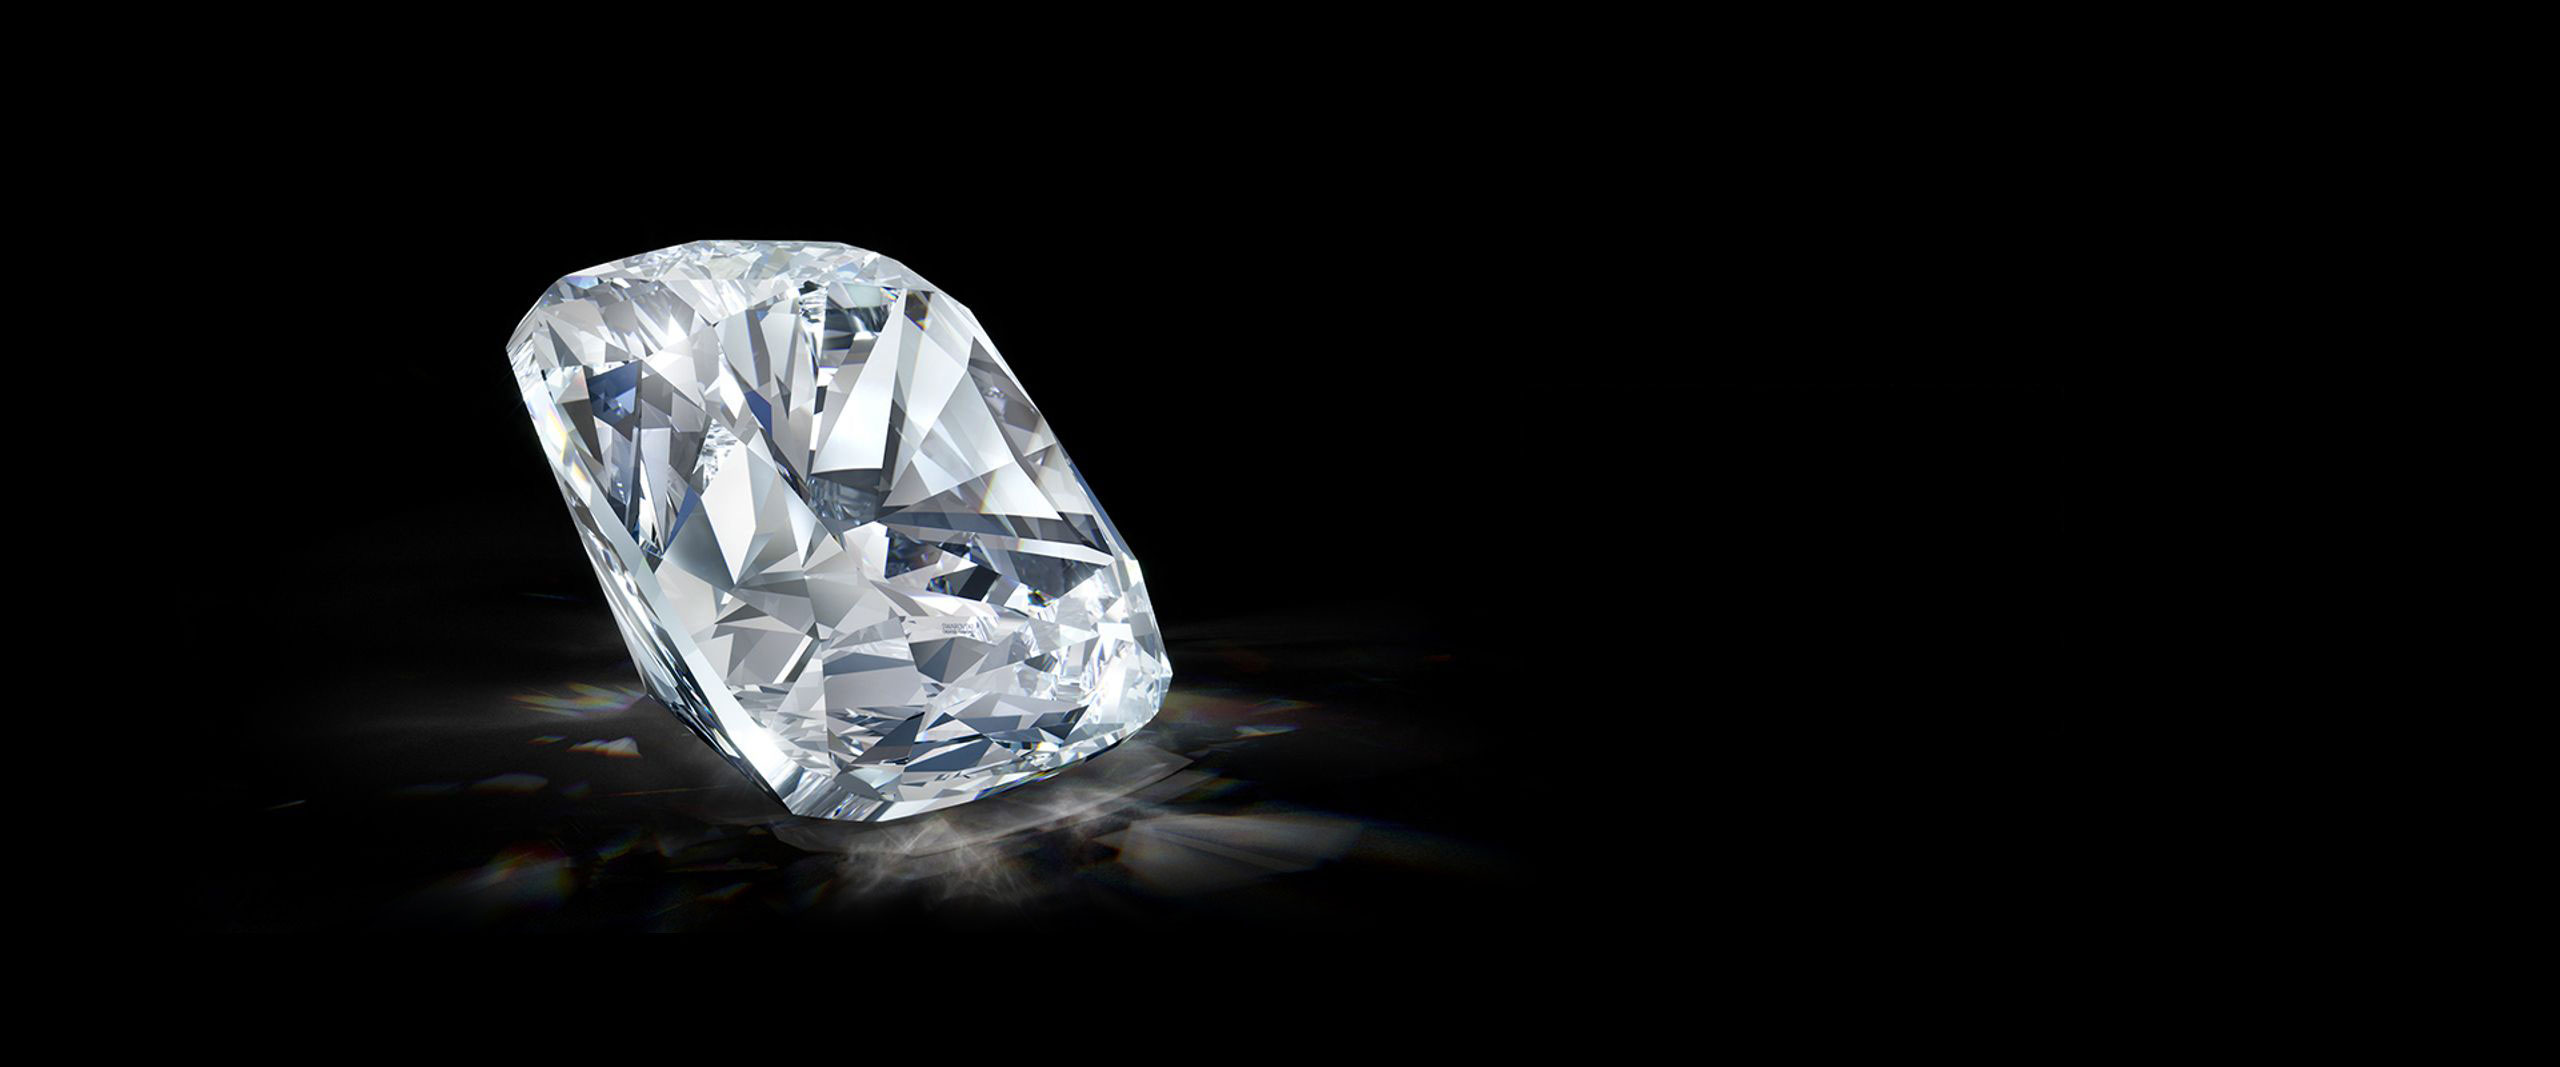 Swarovski diamonds available at Maharajas